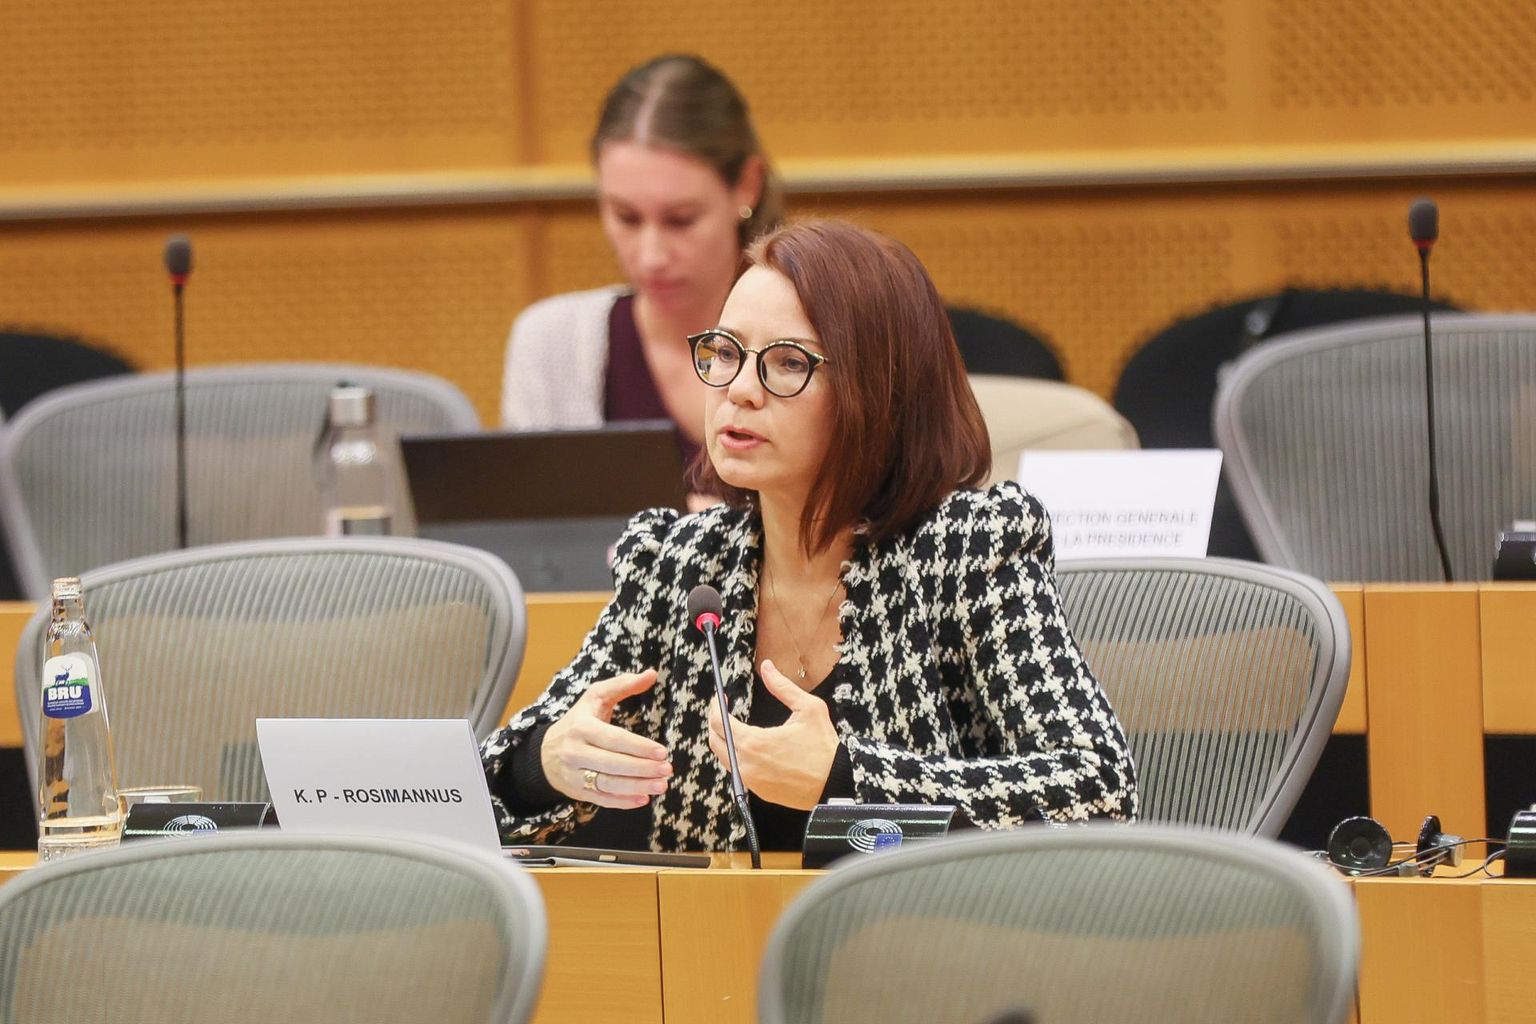 Кейт Пентус-Розиманнус прошла слушания в Европарламенте.